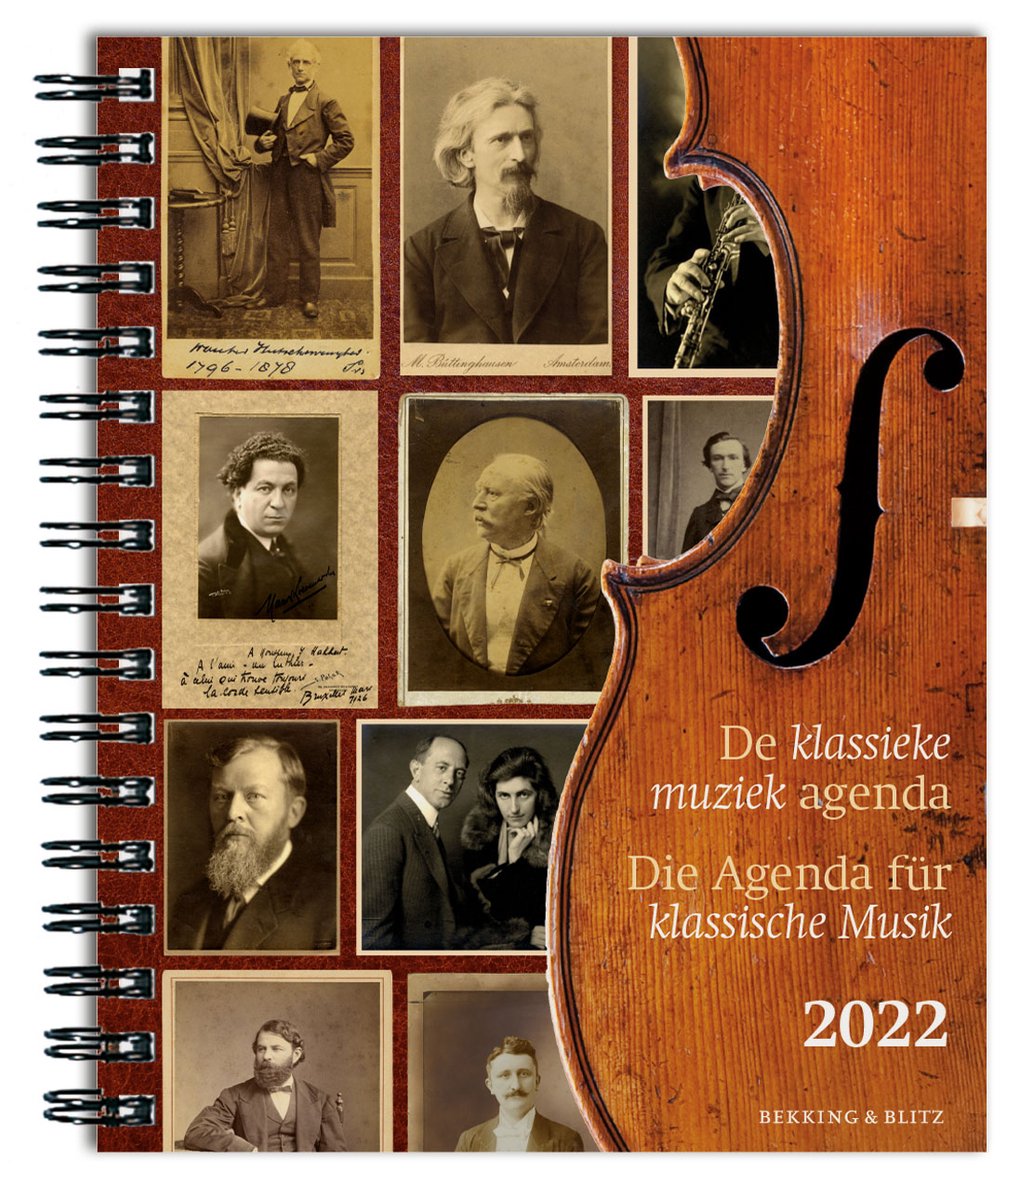 Bekking & Blitz - Agenda 2022 - De klassieke muziek agenda - Rijk geïllustreerd - Informatief